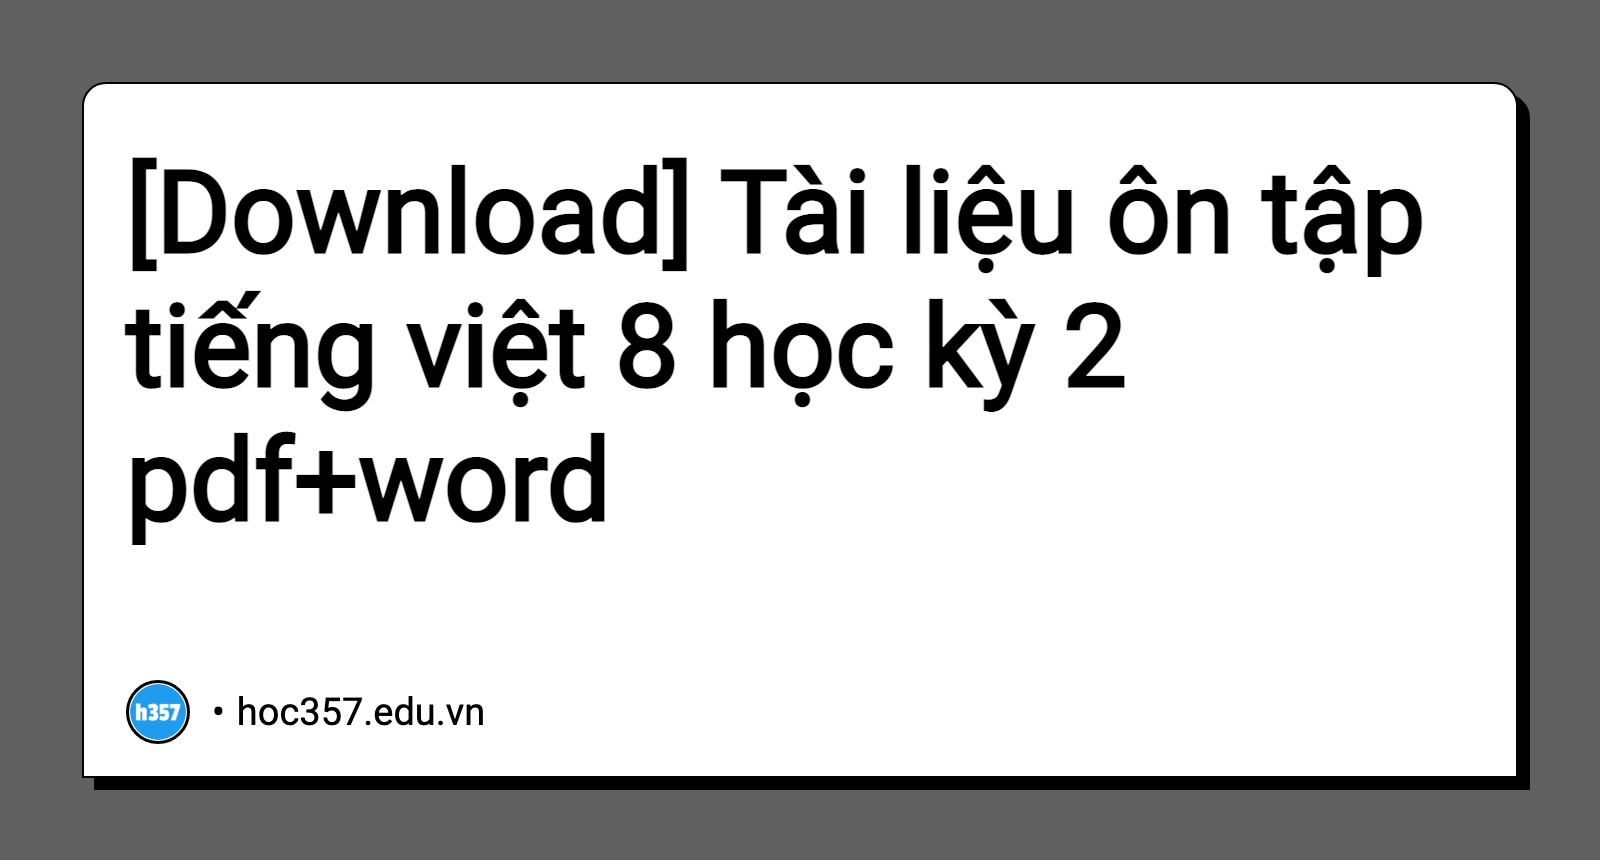 Tiếng Việt 8 là một cách tuyệt vời để rèn luyện khả năng ngôn ngữ của bạn. Hãy thử xem những bài giảng trực tuyến thú vị và học thêm từ vựng và ngữ pháp cơ bản để cải thiện tiếng Việt của bạn ngay bây giờ.